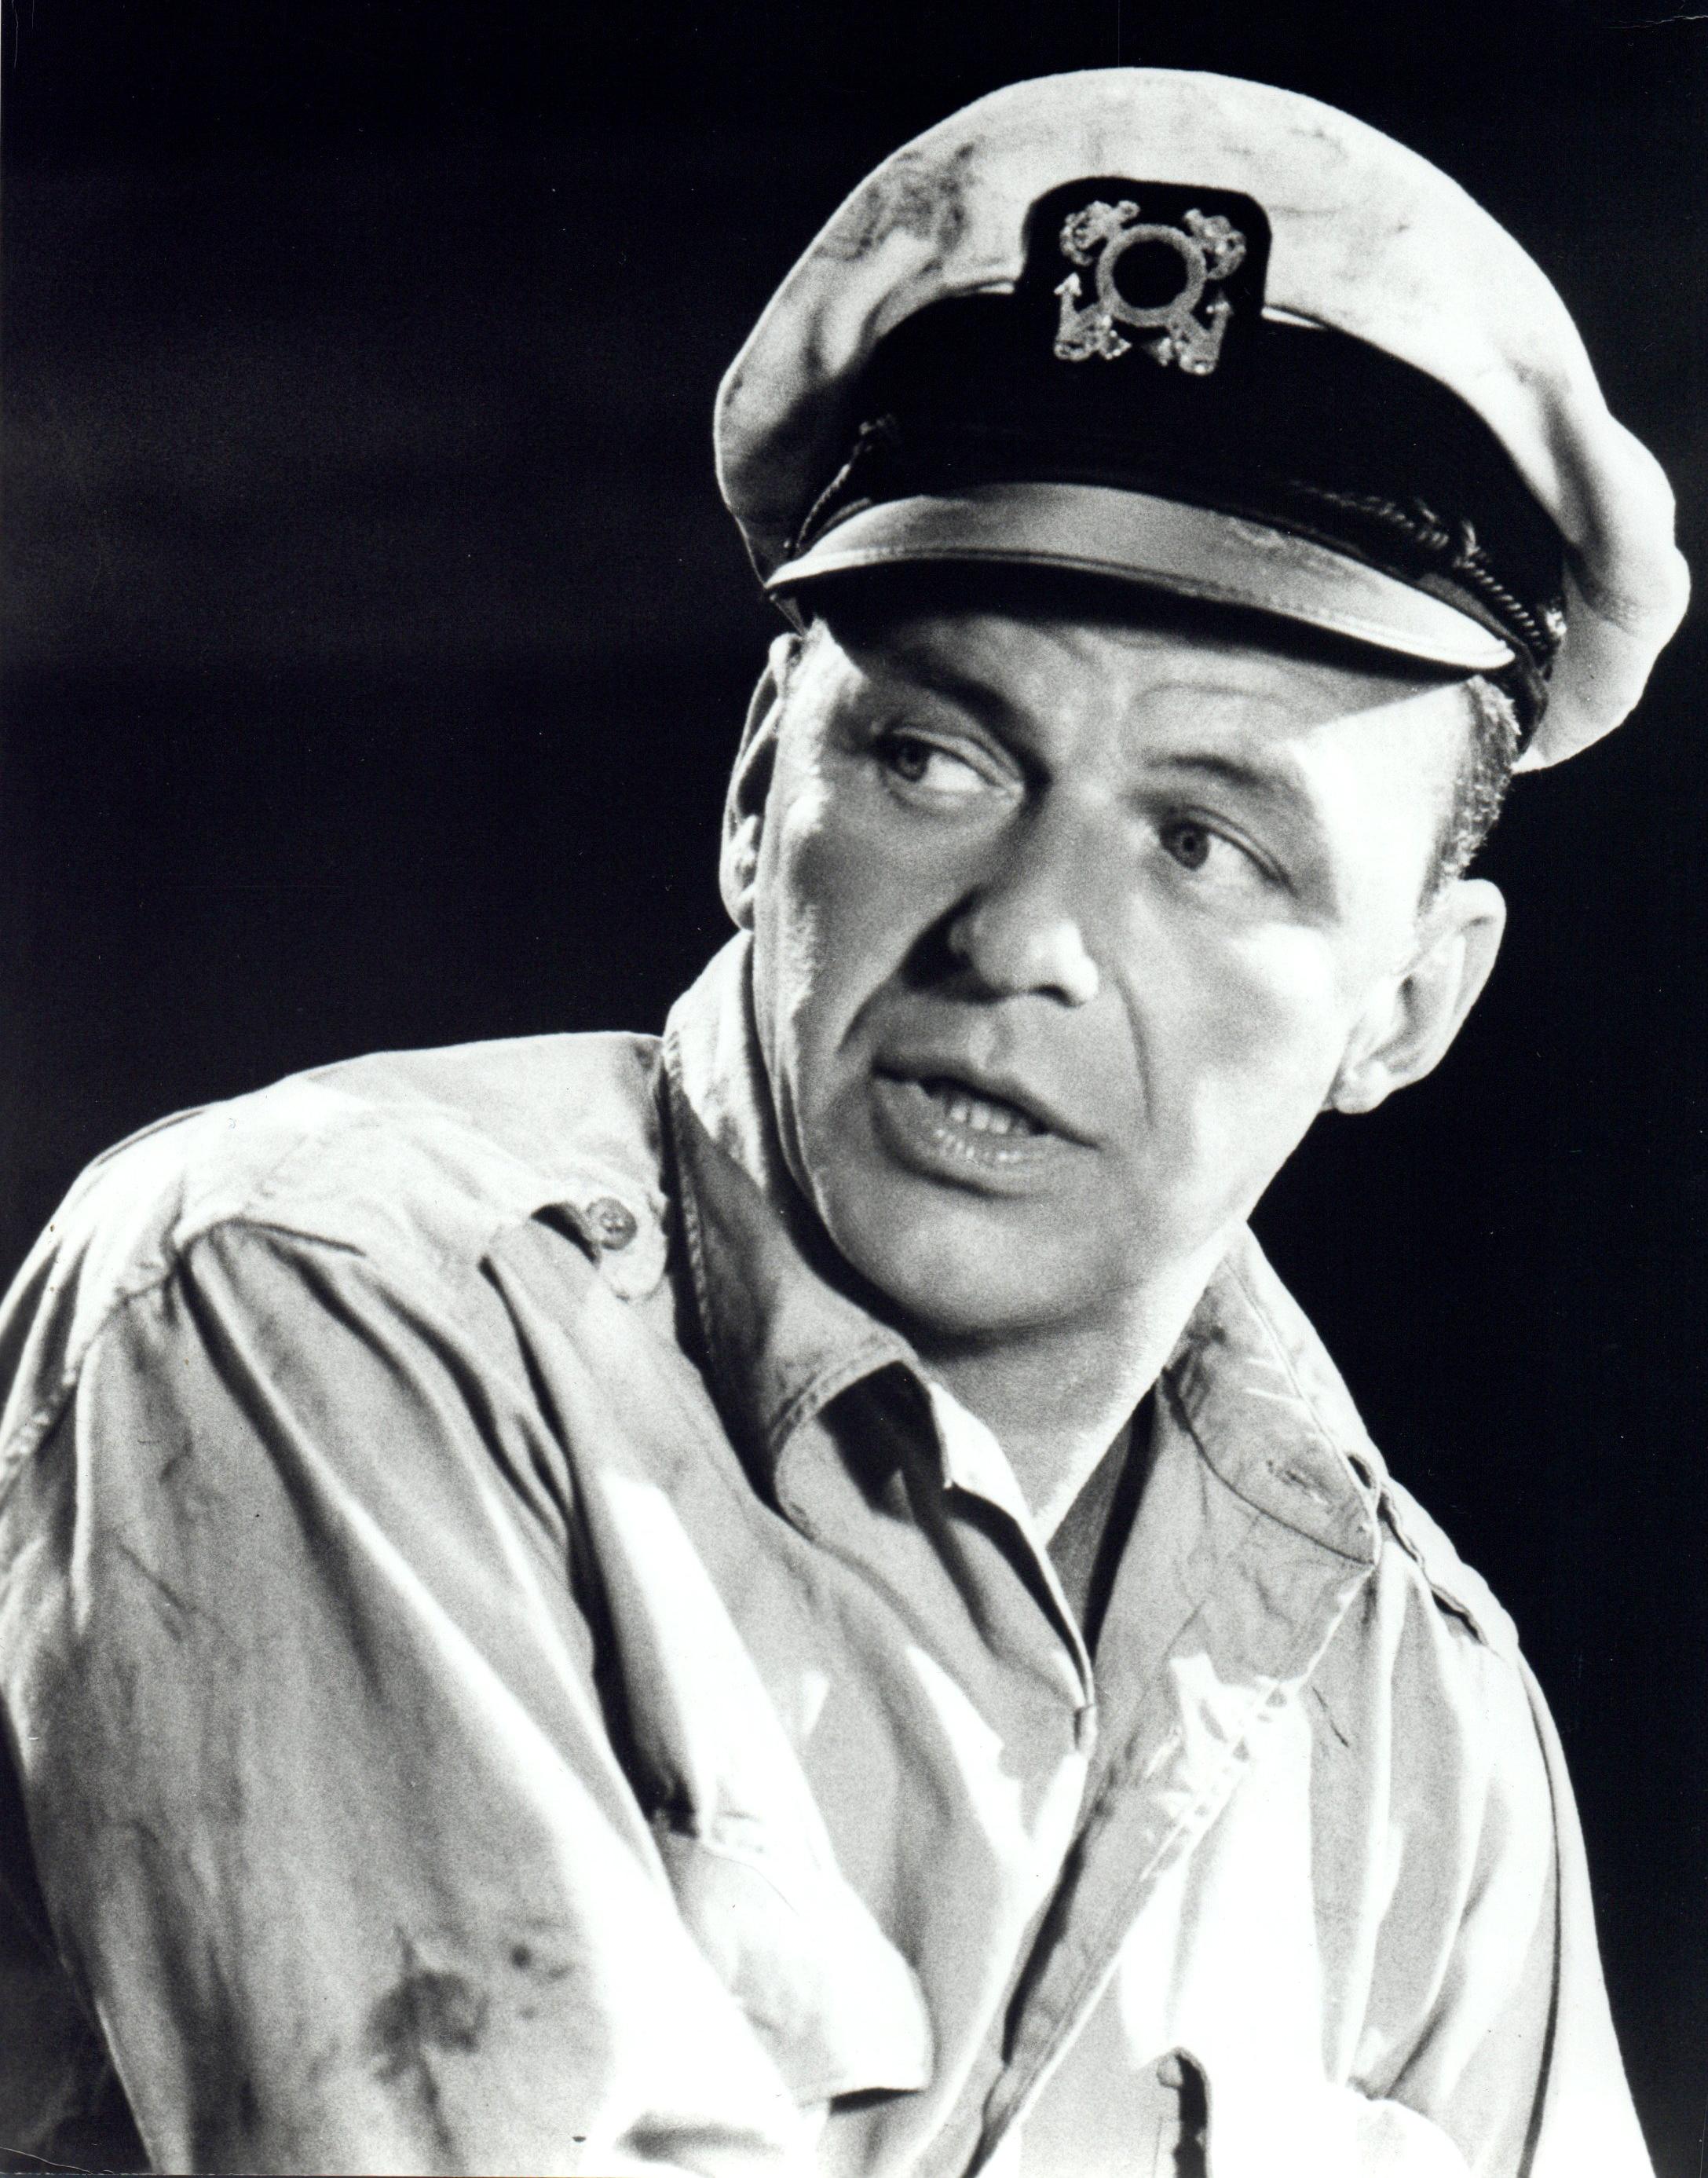 Unknown Portrait Photograph - Frank Sinatra in Sailor Hat Vintage Original Photograph